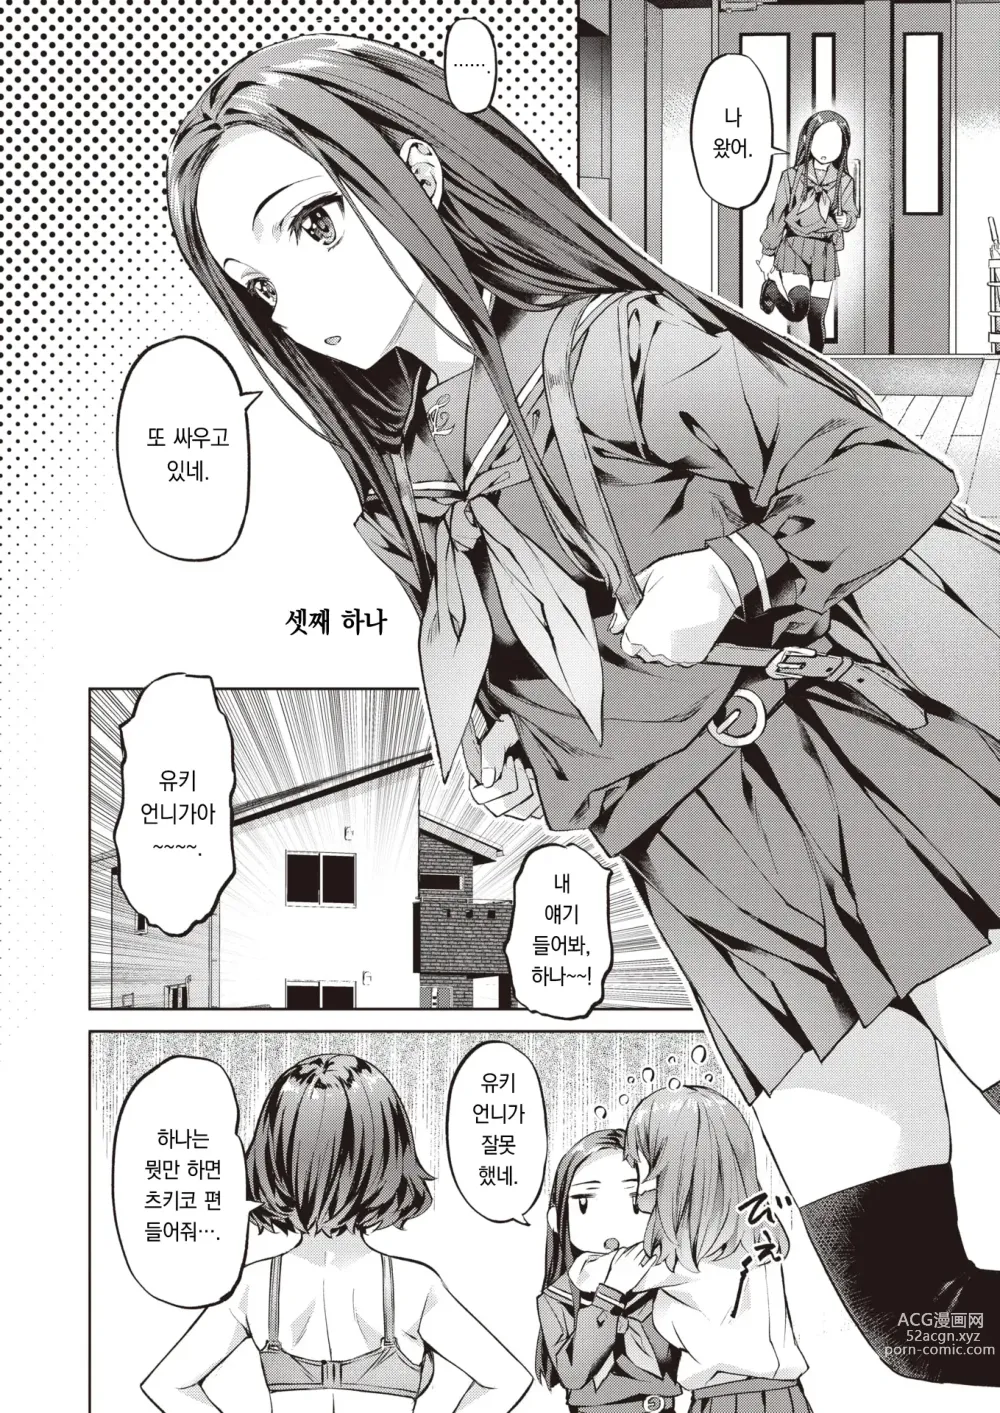 Page 7 of manga 흩날리는 설월화